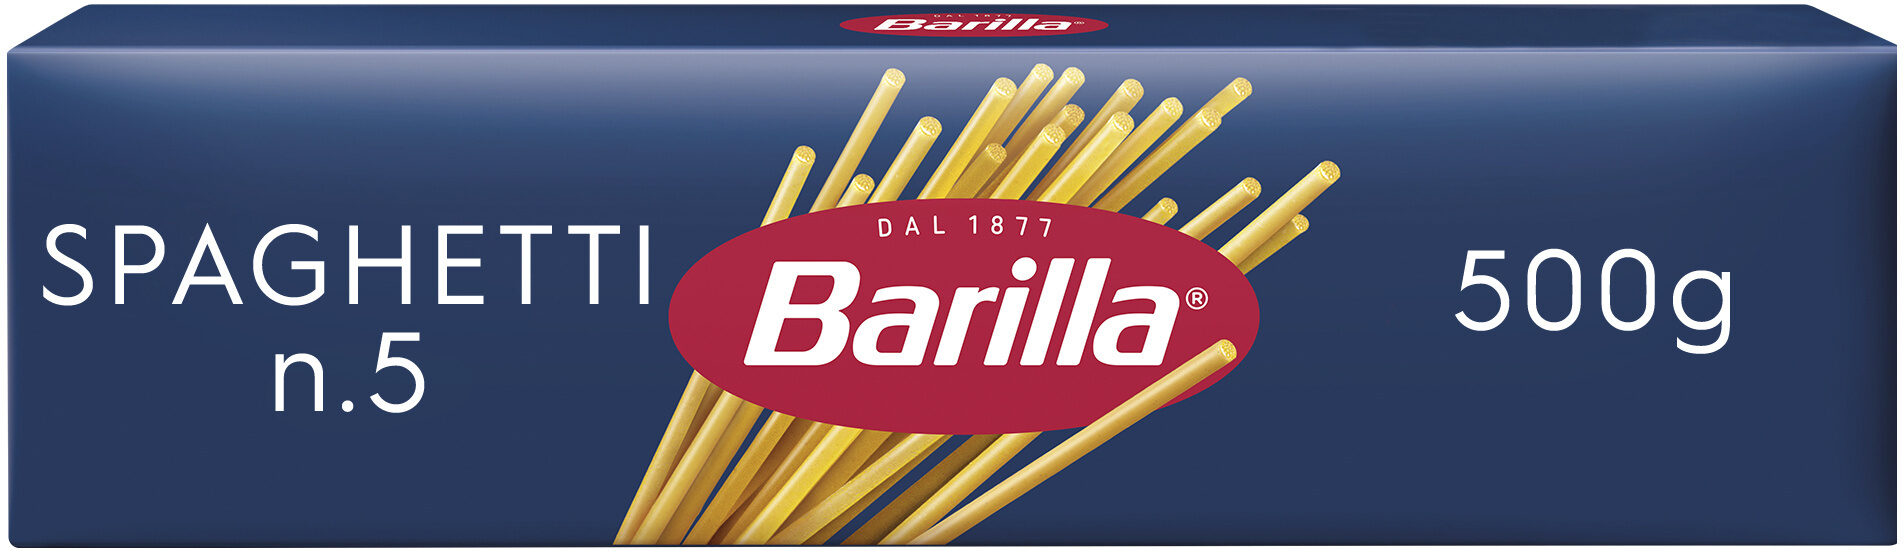 Barilla pates spaghetti n°5 500g - 製品 - fr